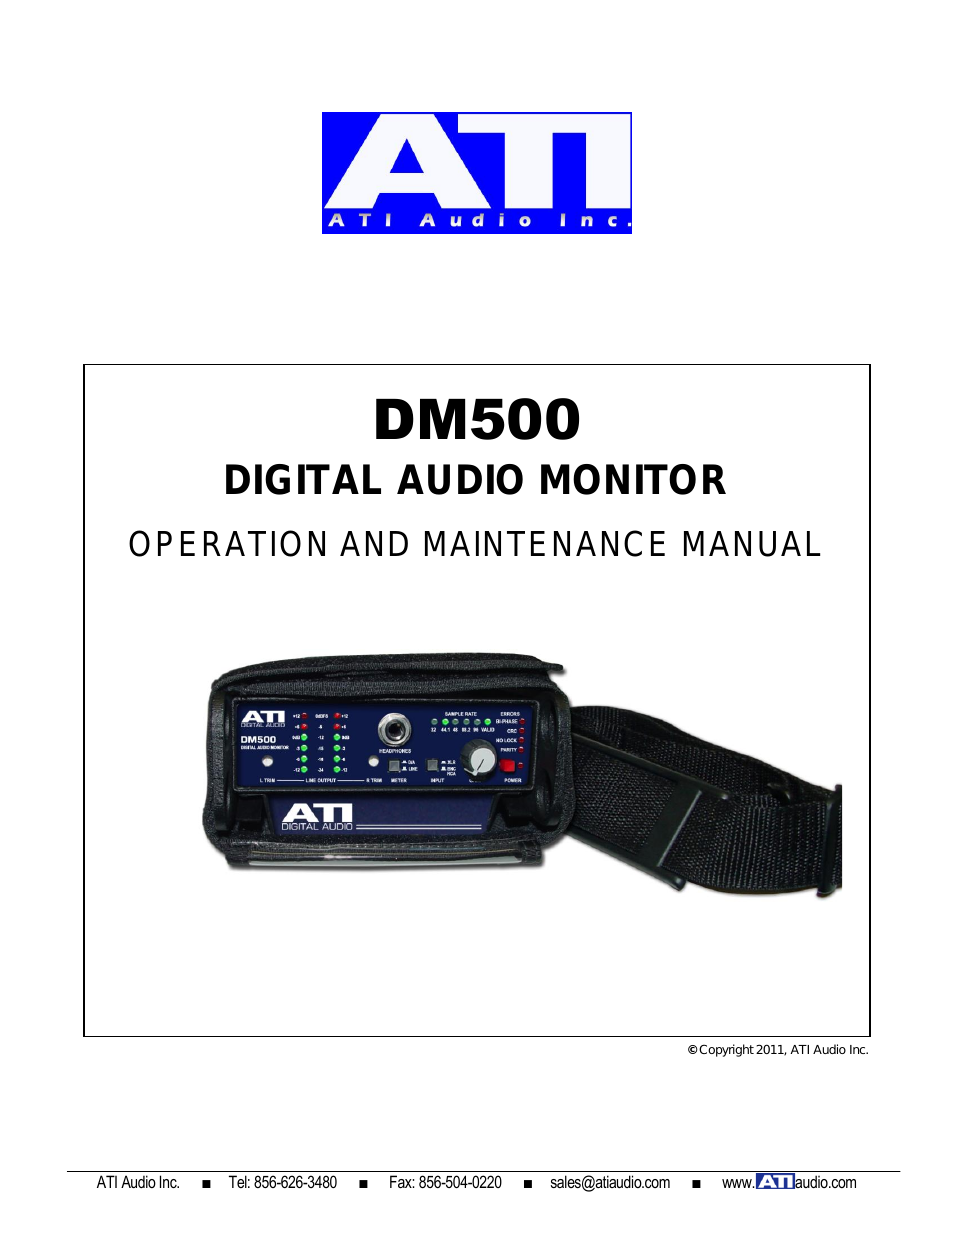 DM500-1